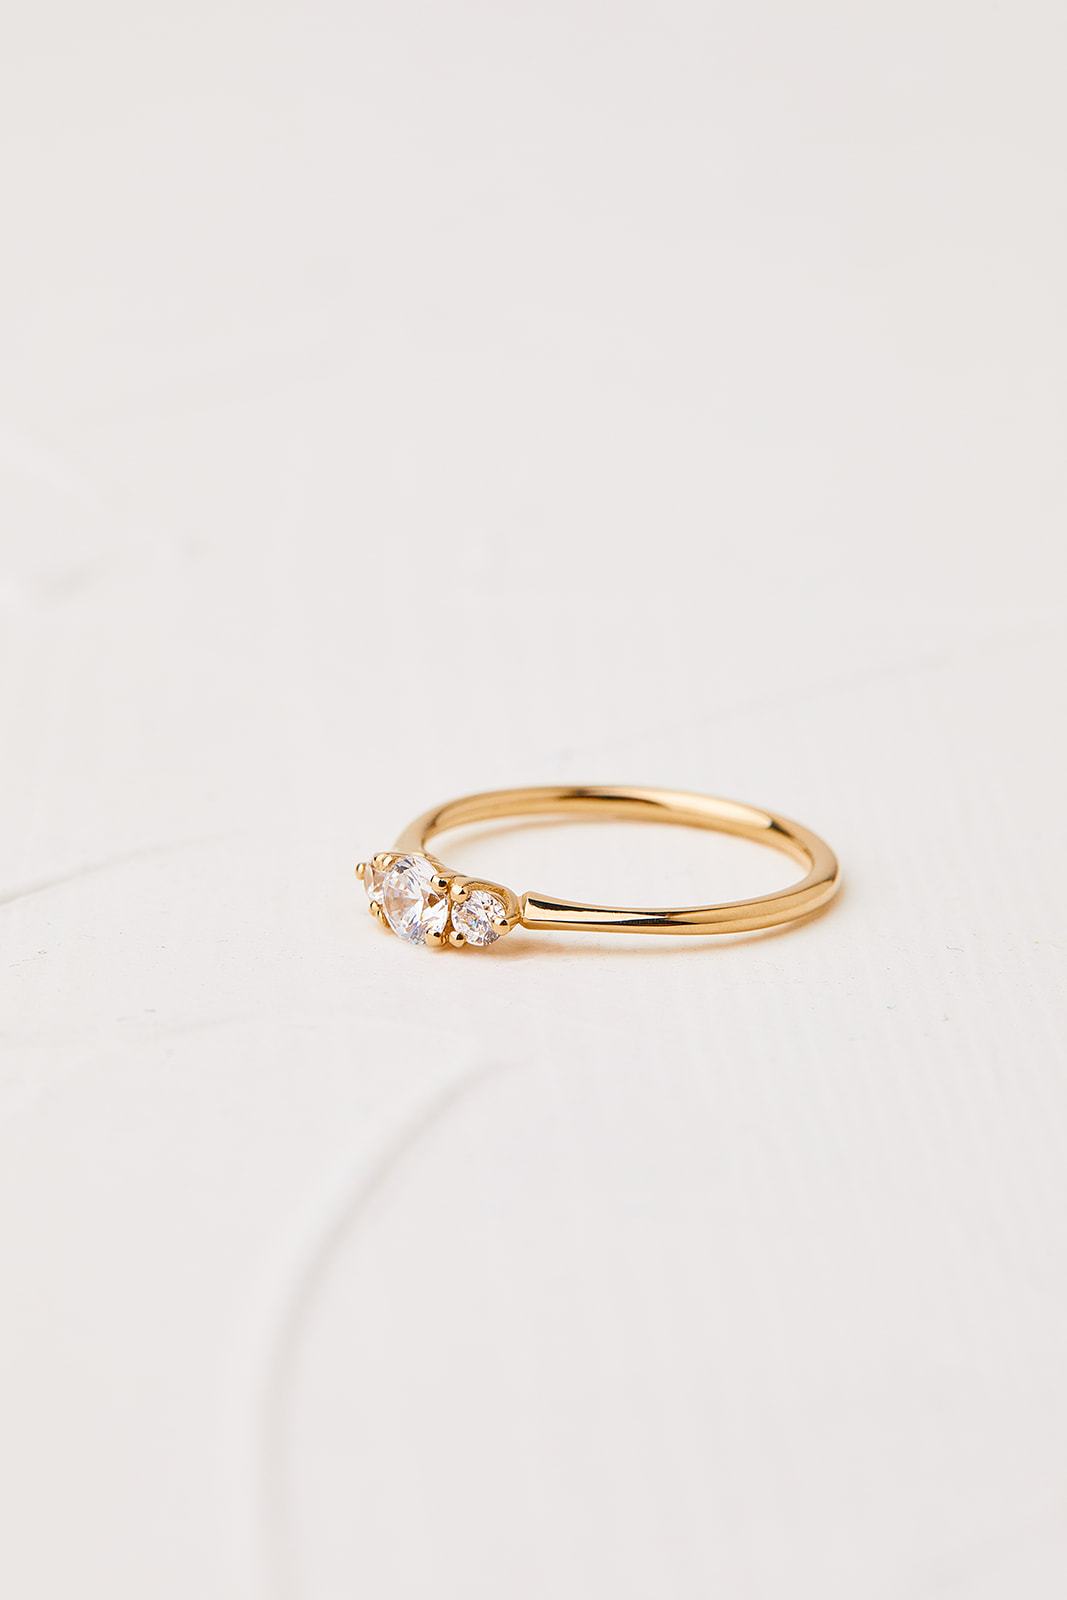 טבעת כלניות עם יהלום מרכזי 0.25-0.4 קראט יהלומי מעבדה